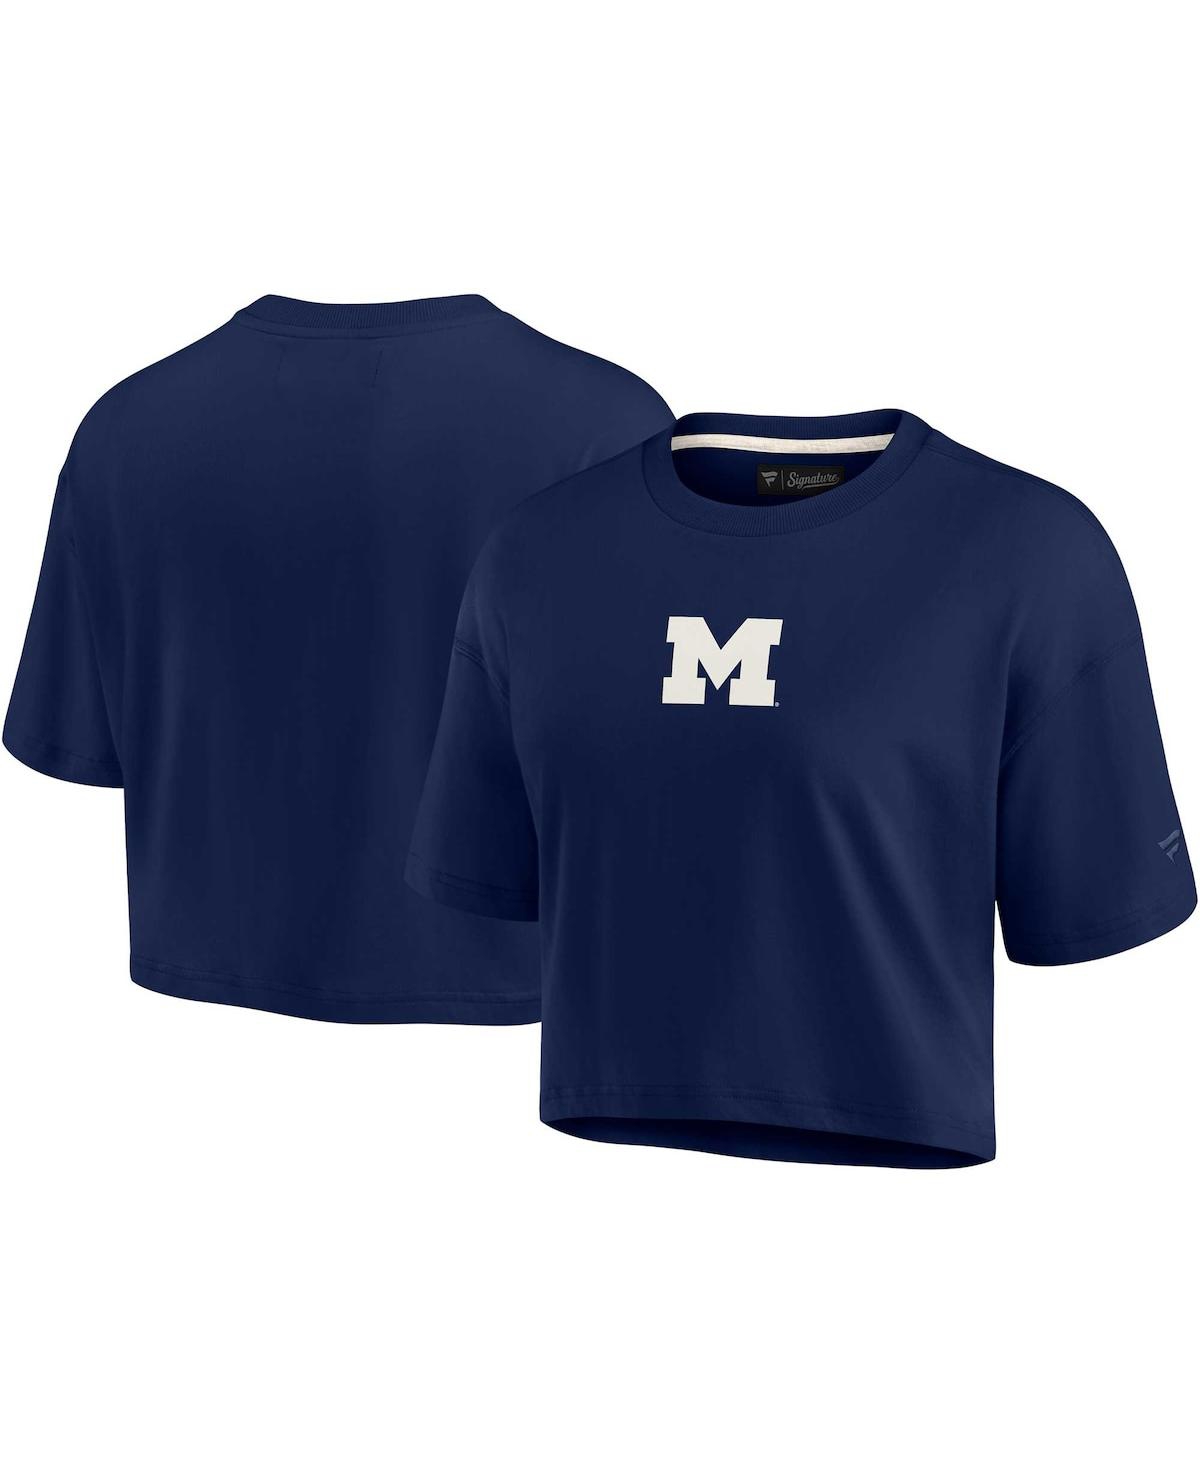 Fanatics Signature Women's  Navy Michigan Wolverines Super Soft Boxy Cropped T-shirt